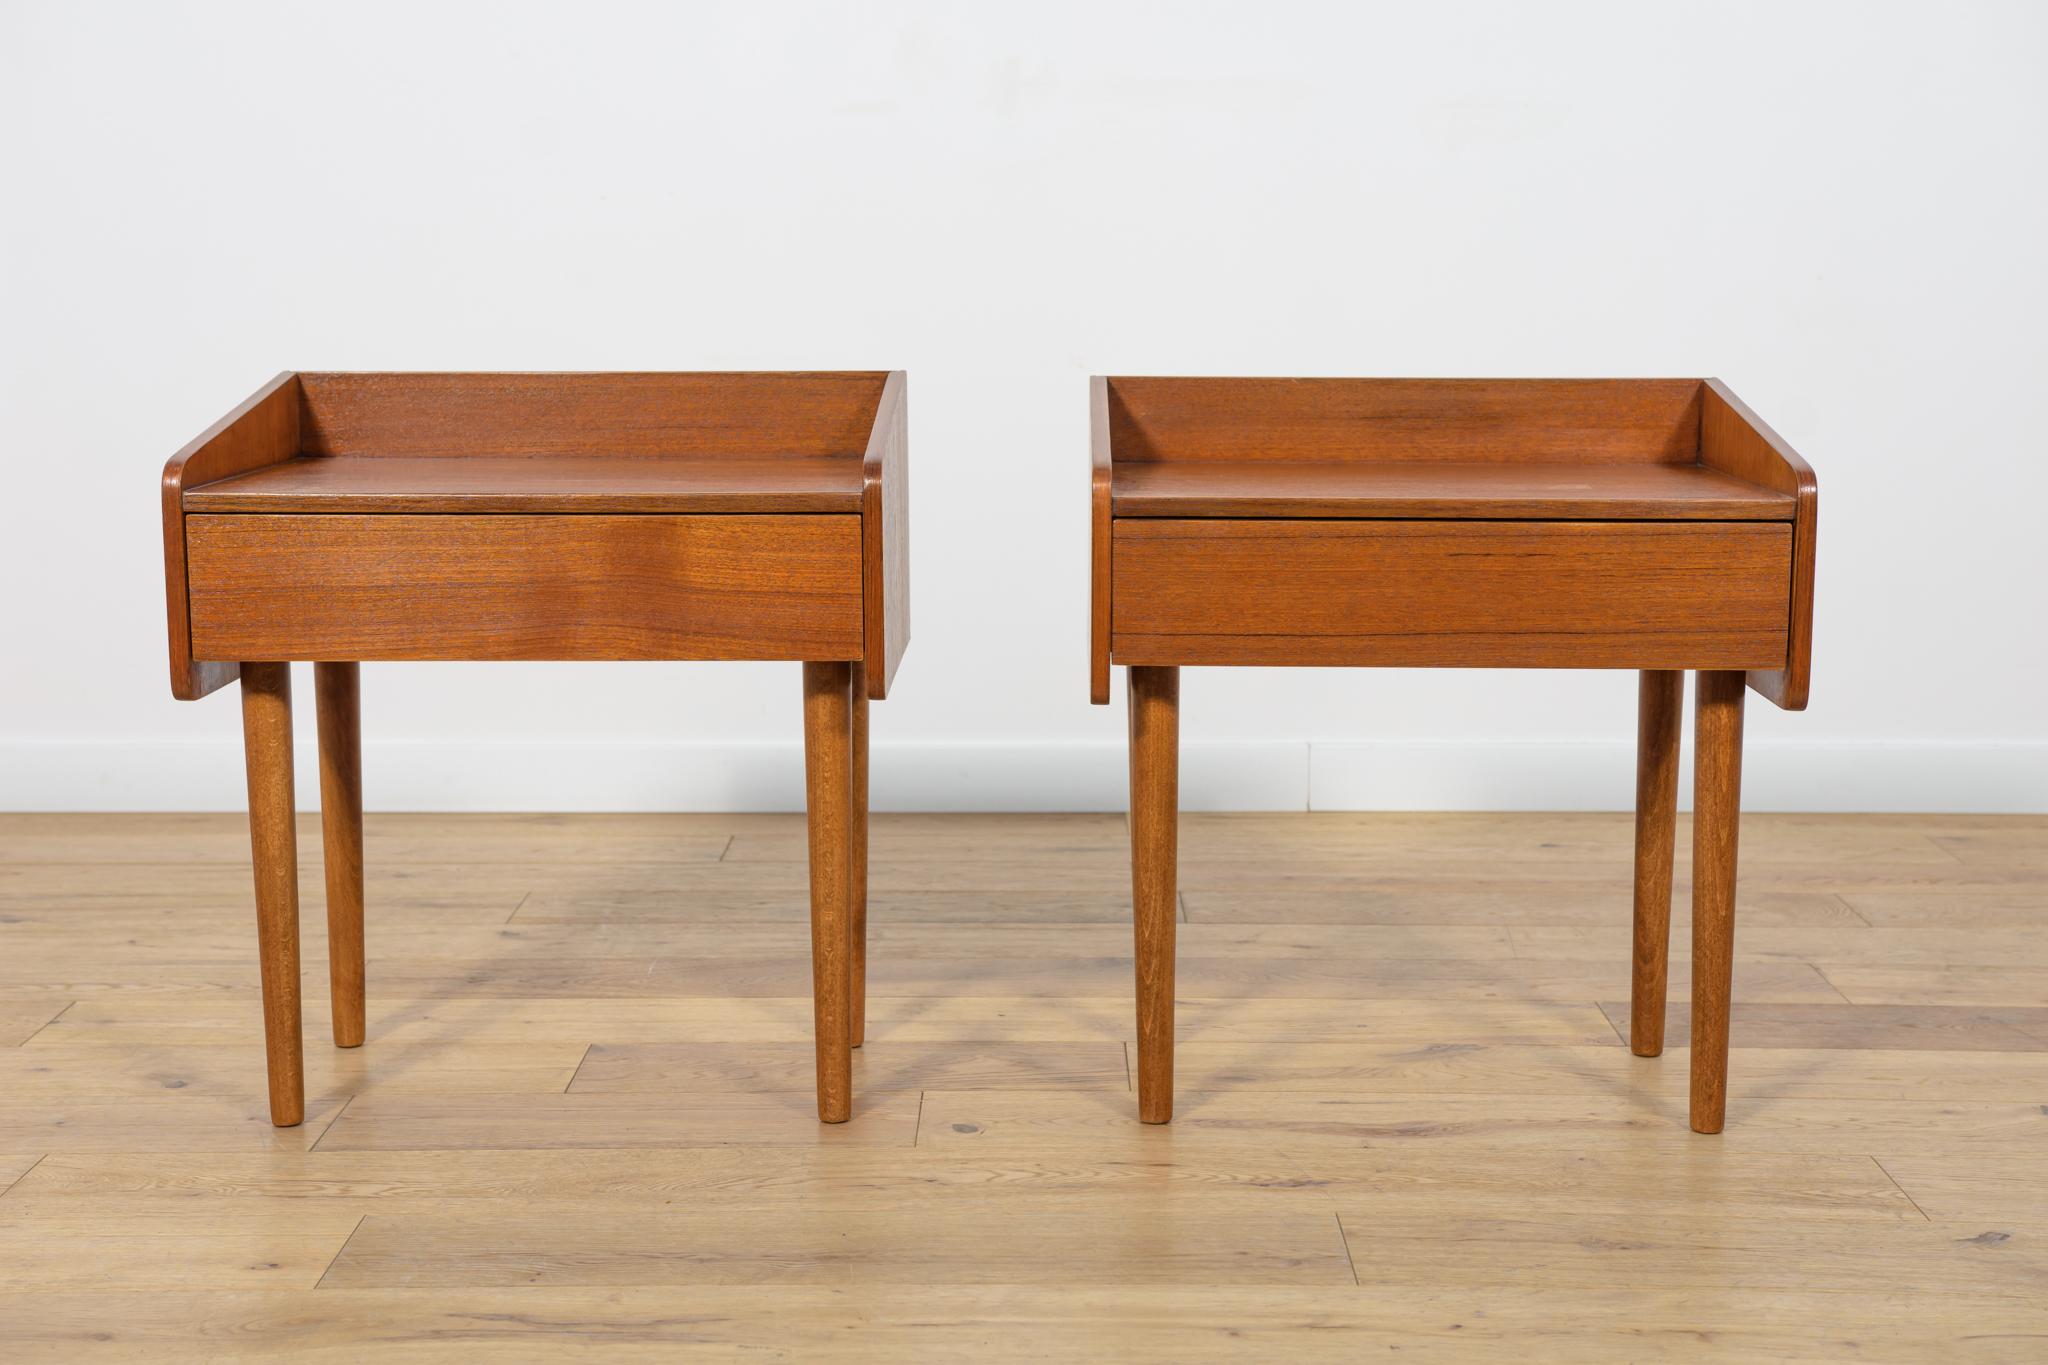 
Paire de tables de chevet fabriquées dans les années 1960 au Danemark. Pieds en bois de teck. L'ensemble a fait l'objet d'une rénovation complète : le bois a été nettoyé de l'ancienne surface, peint avec une teinture pour chêne et recouvert d'une